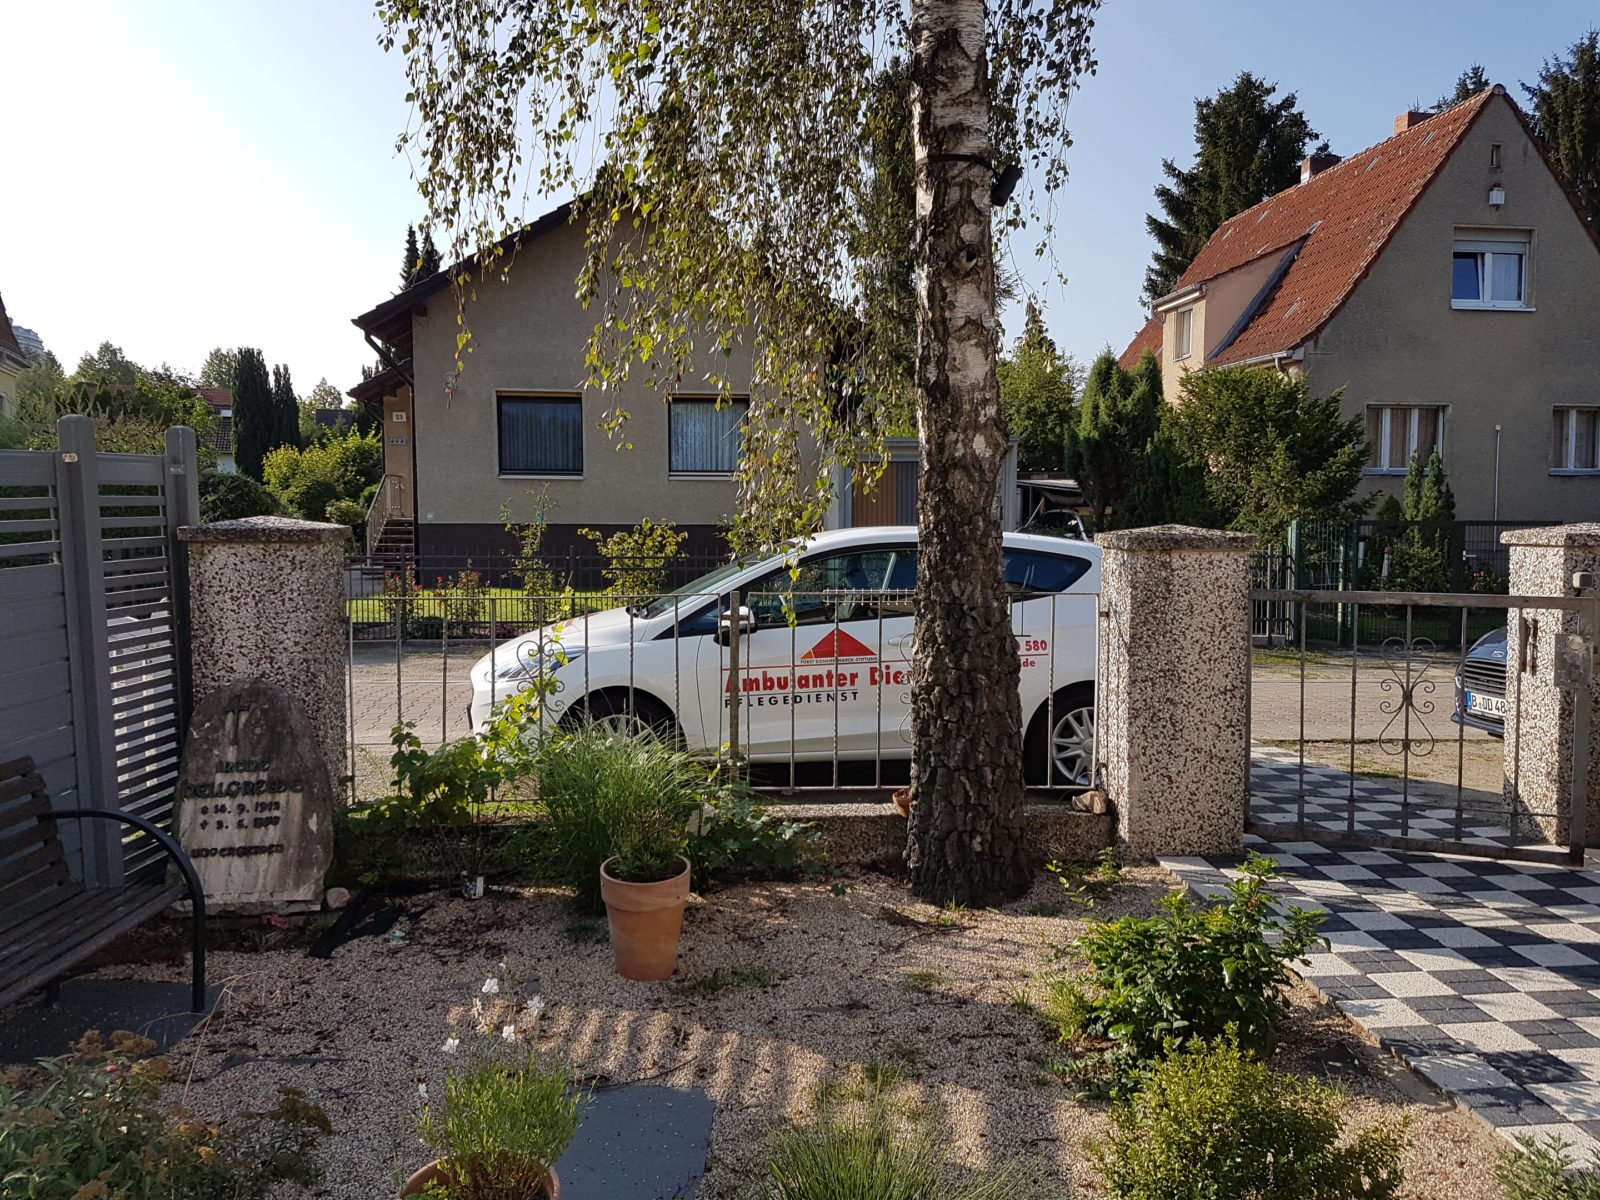 Ein Auto des Ambulanten Dienstes, mit Logos beklebt, steht in einem Wohngebiet am Straßenrand. Das Bild ist aus einem Vorgarten heraus fotografiert. Das Auto steht hinter einem Zaun, davor ein Baum und mehrere Töpfe mit Pflanzen.